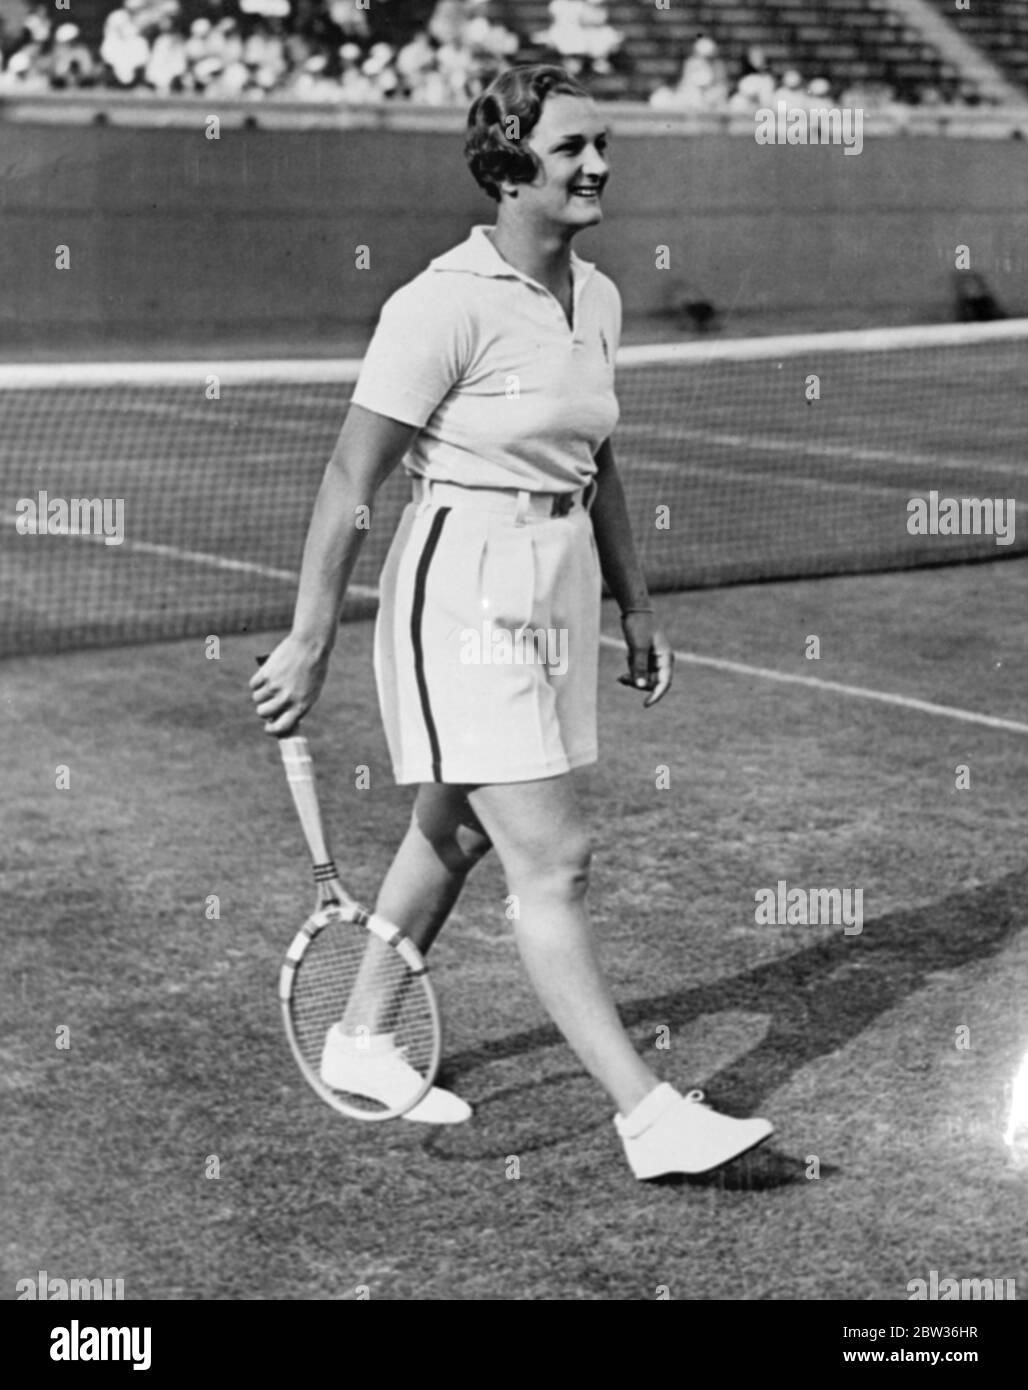 Helen Jacobs juega al tenis en pantalones cortos . Miss Helen Jacobs , la jugadora de tenis americana, llevando pantalones cortos para la ronda de apertura del Campeonato Nacional de Tenis Femenino de los Estados Unidos en Forest Hills, Long Island . La Srta. Jacobs dice que los pantalones cortos son más frescos y más cómodos. 21 de agosto de 1933 Foto de stock